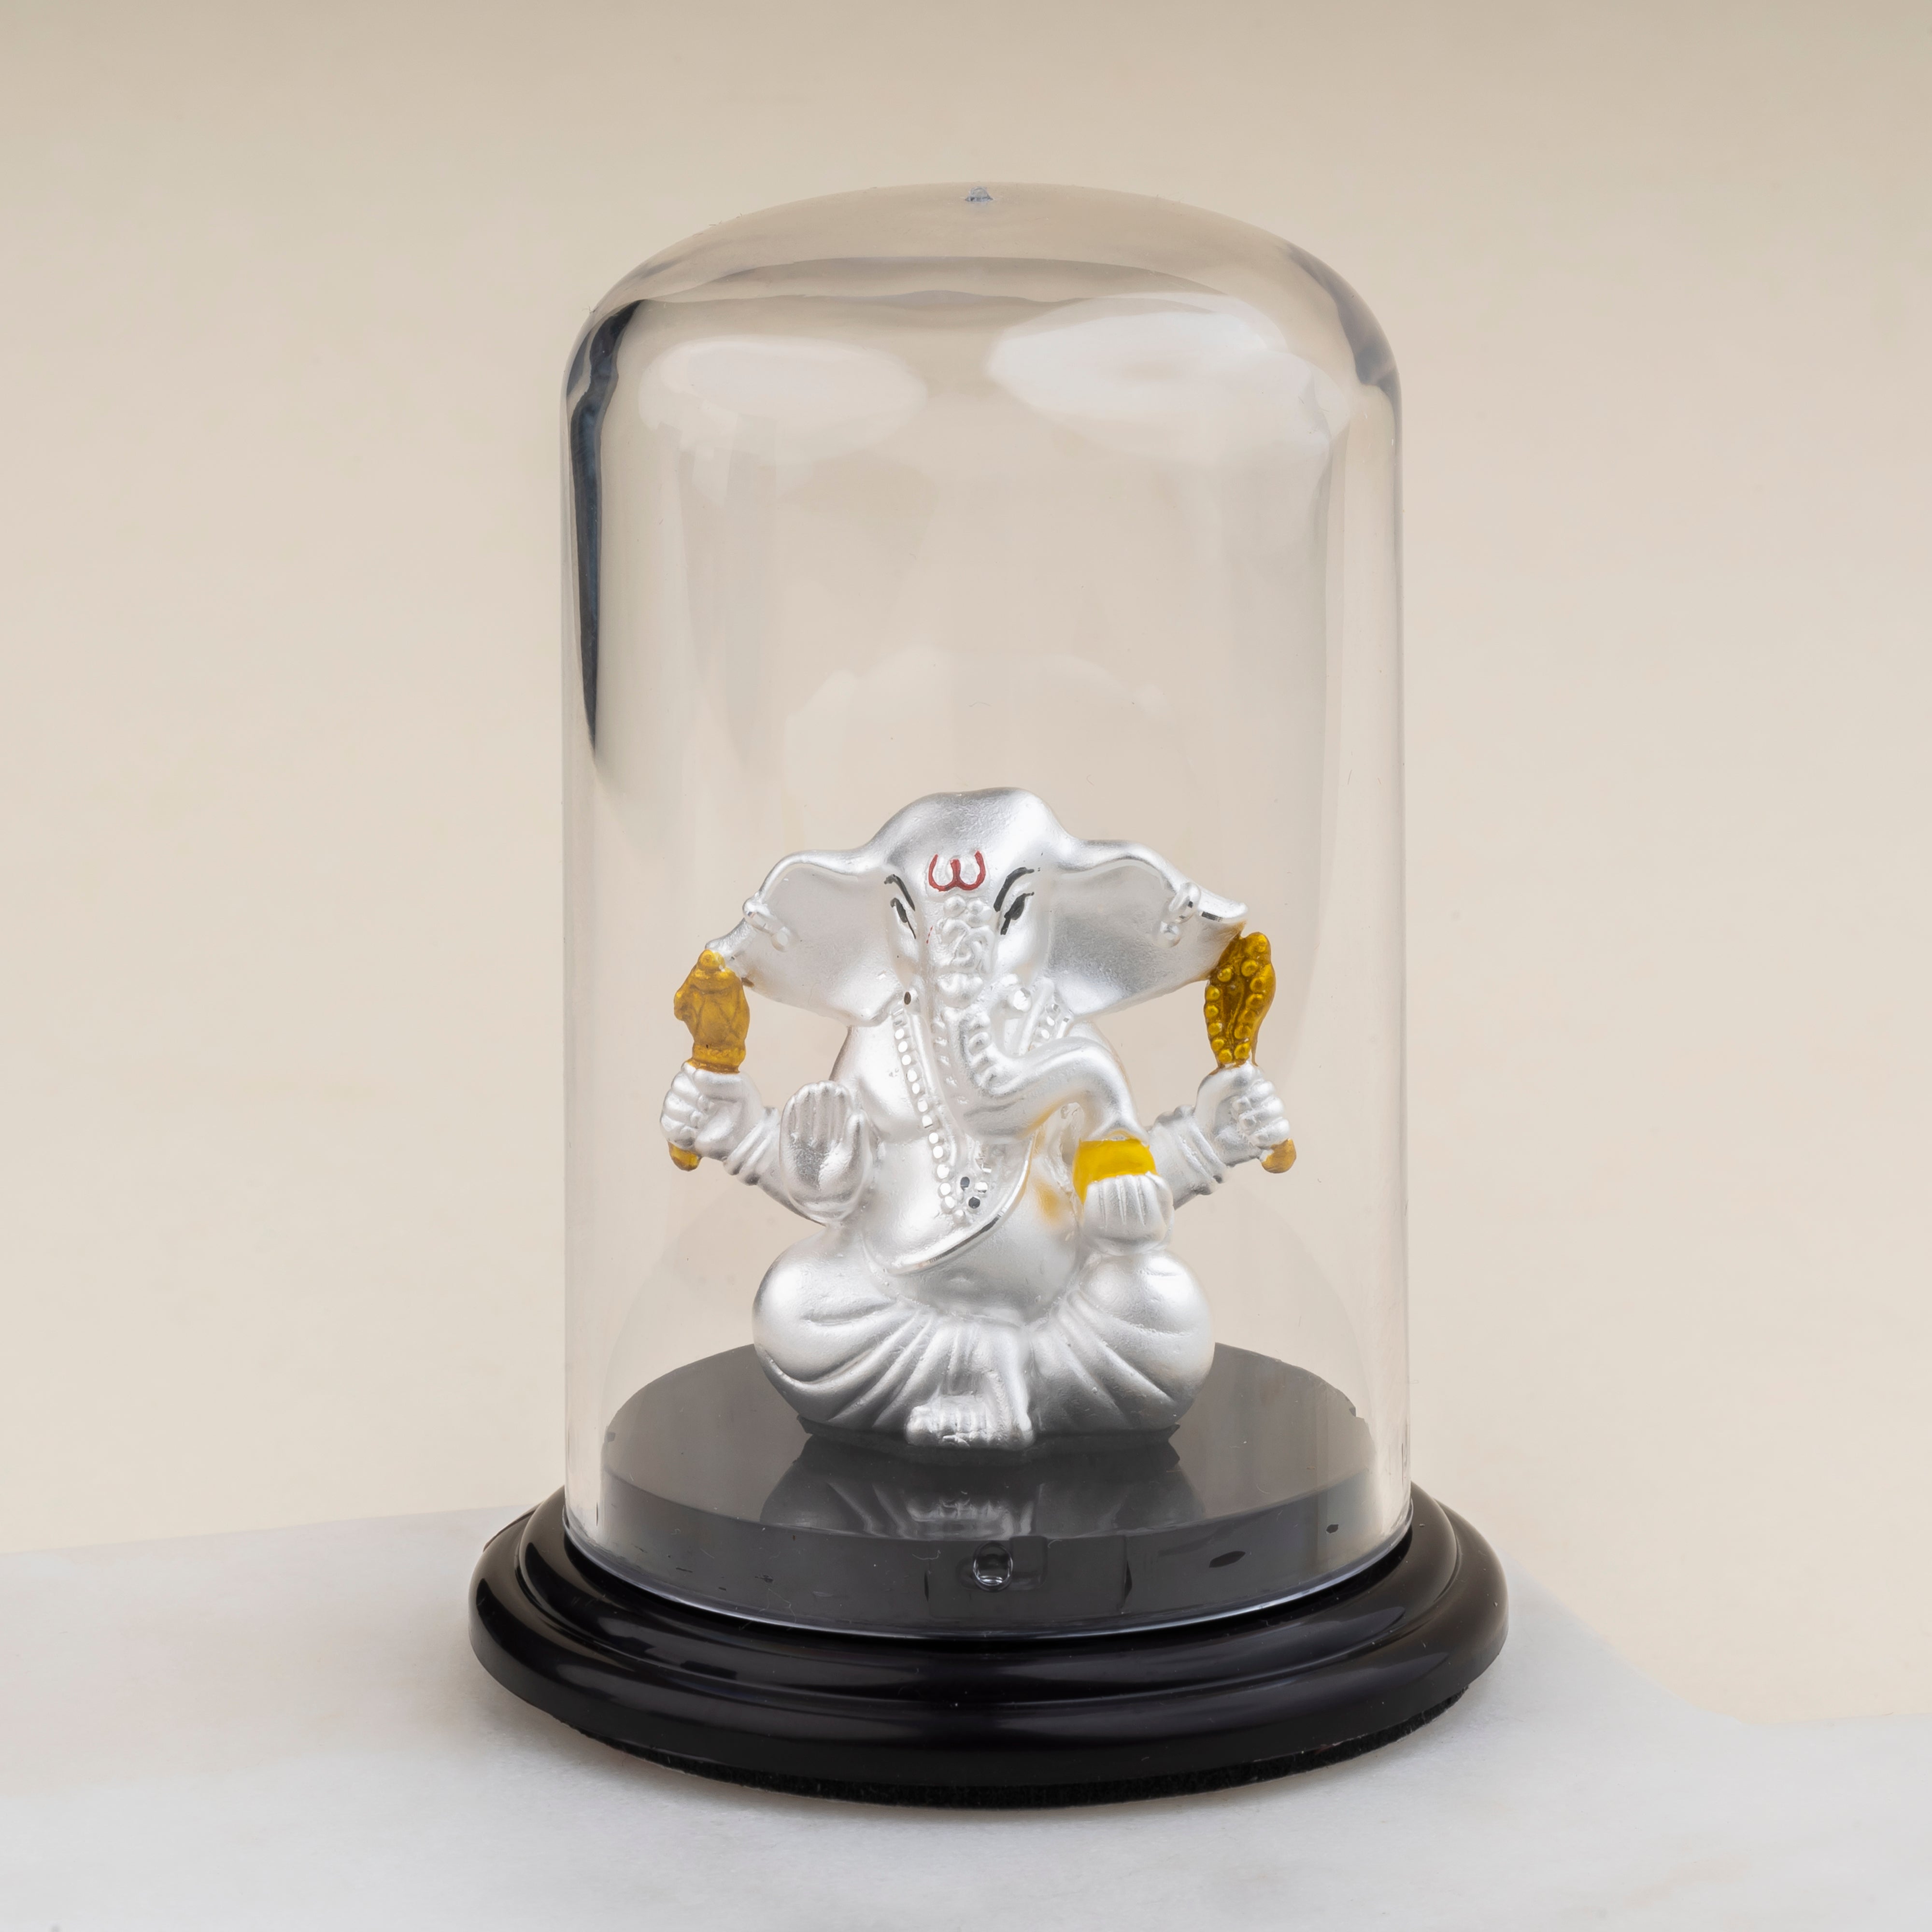 Silver Lord Shree Ganesh Idol